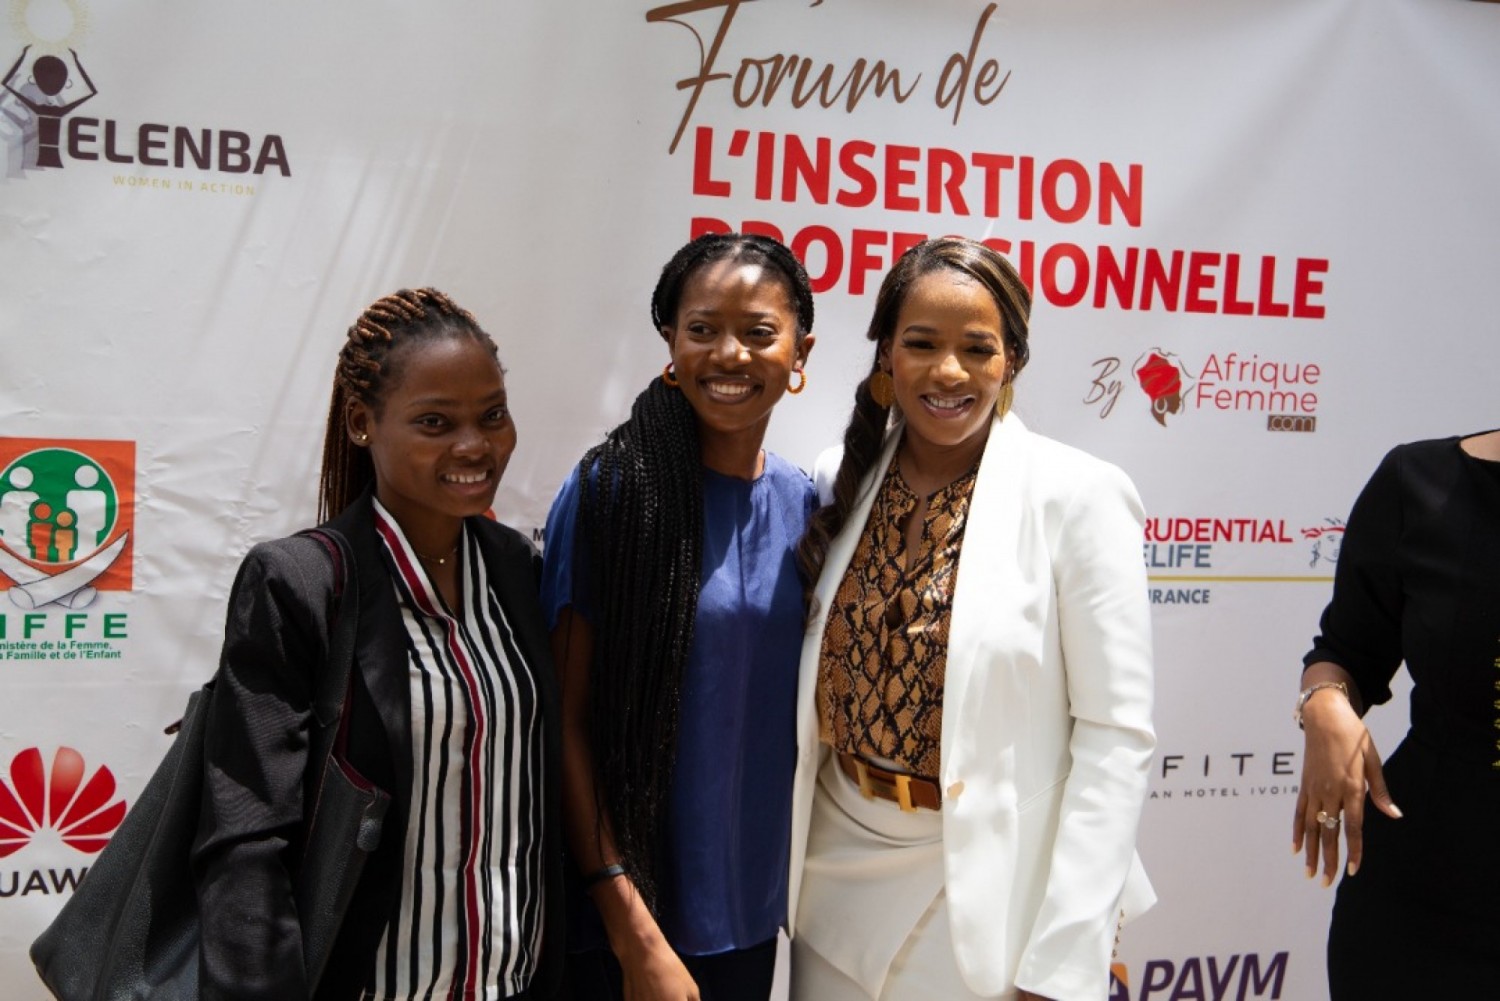 Côte d'Ivoire :  Insertion professionnelle, un forum annoncé à Abidjan, pour preparer le mindset et rédiger le CV, présidé par Nasseneba Touré